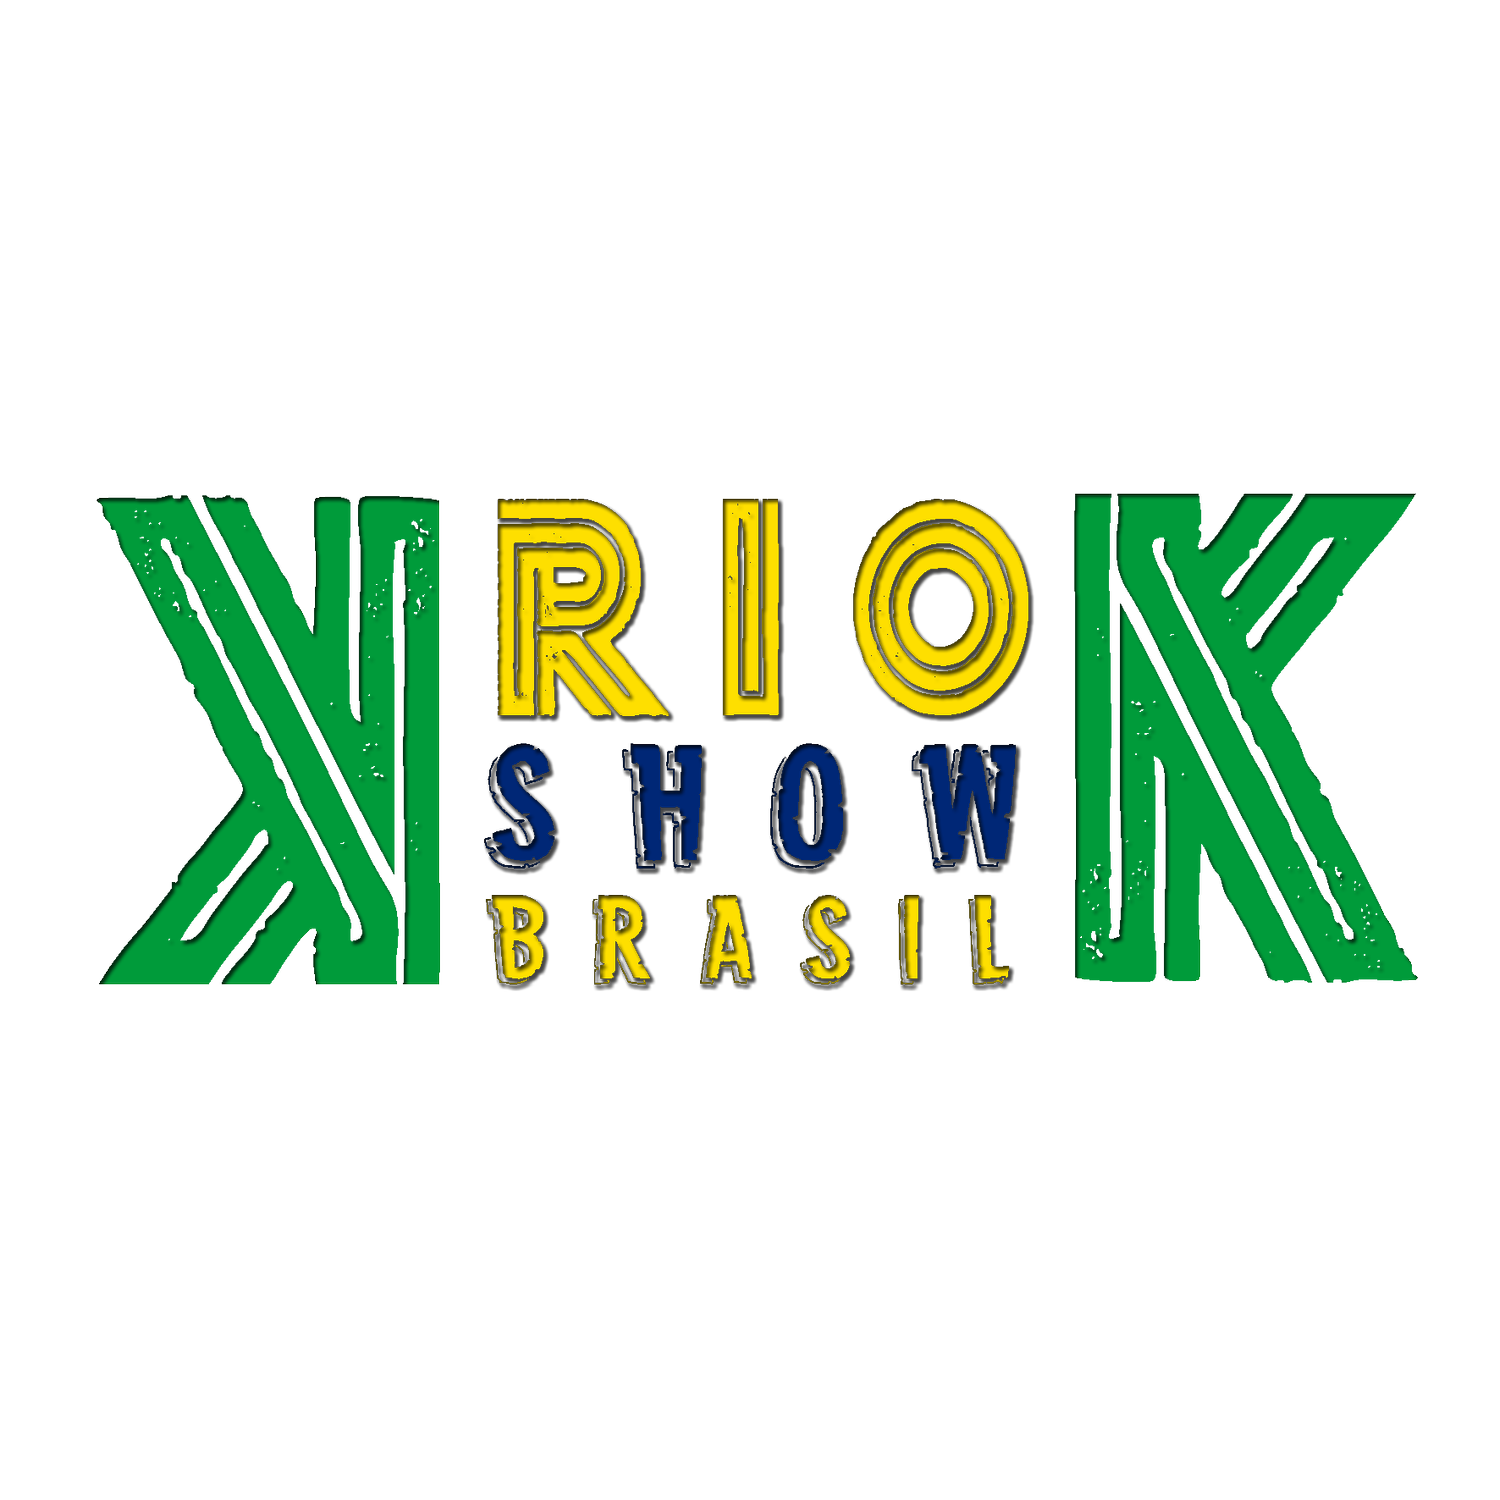 K.RIO.K Show